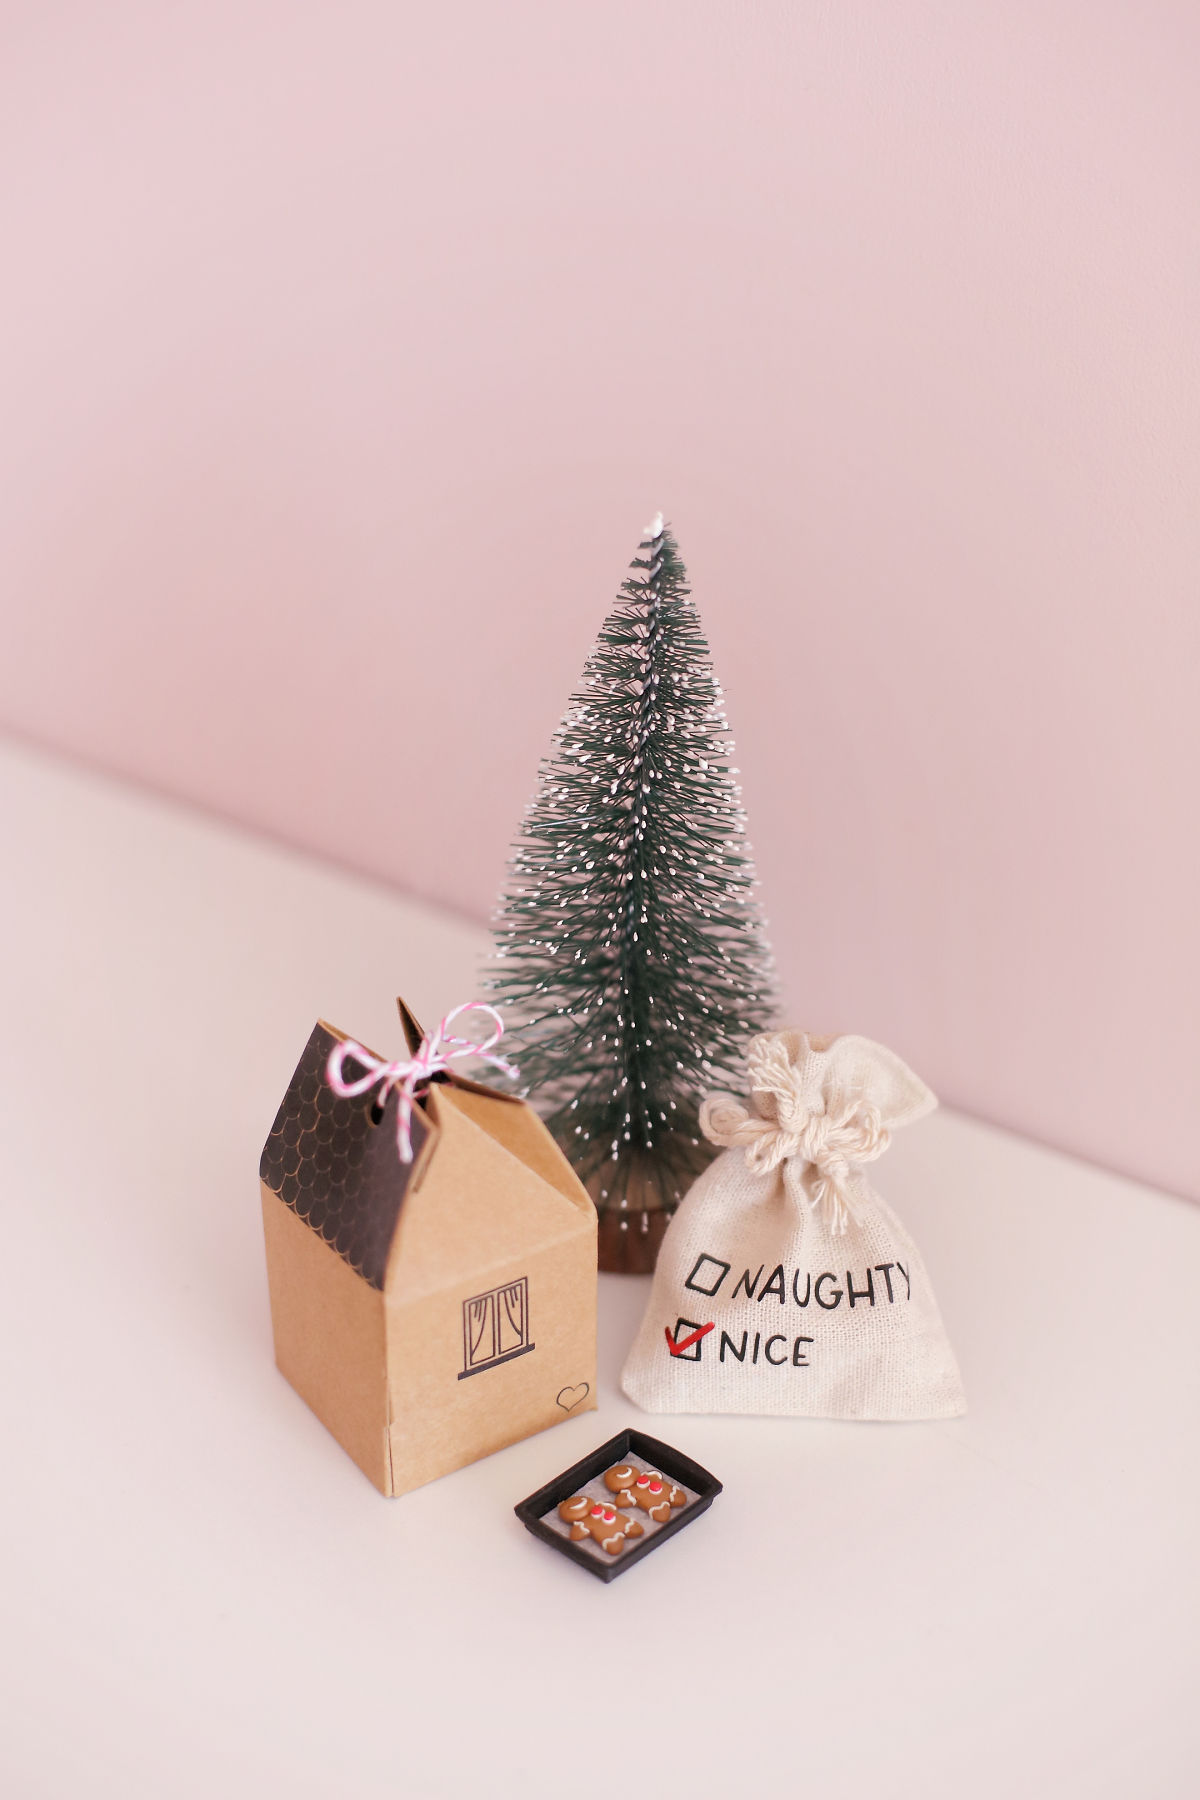 The Tiny Dollhouse SA Christmas scene